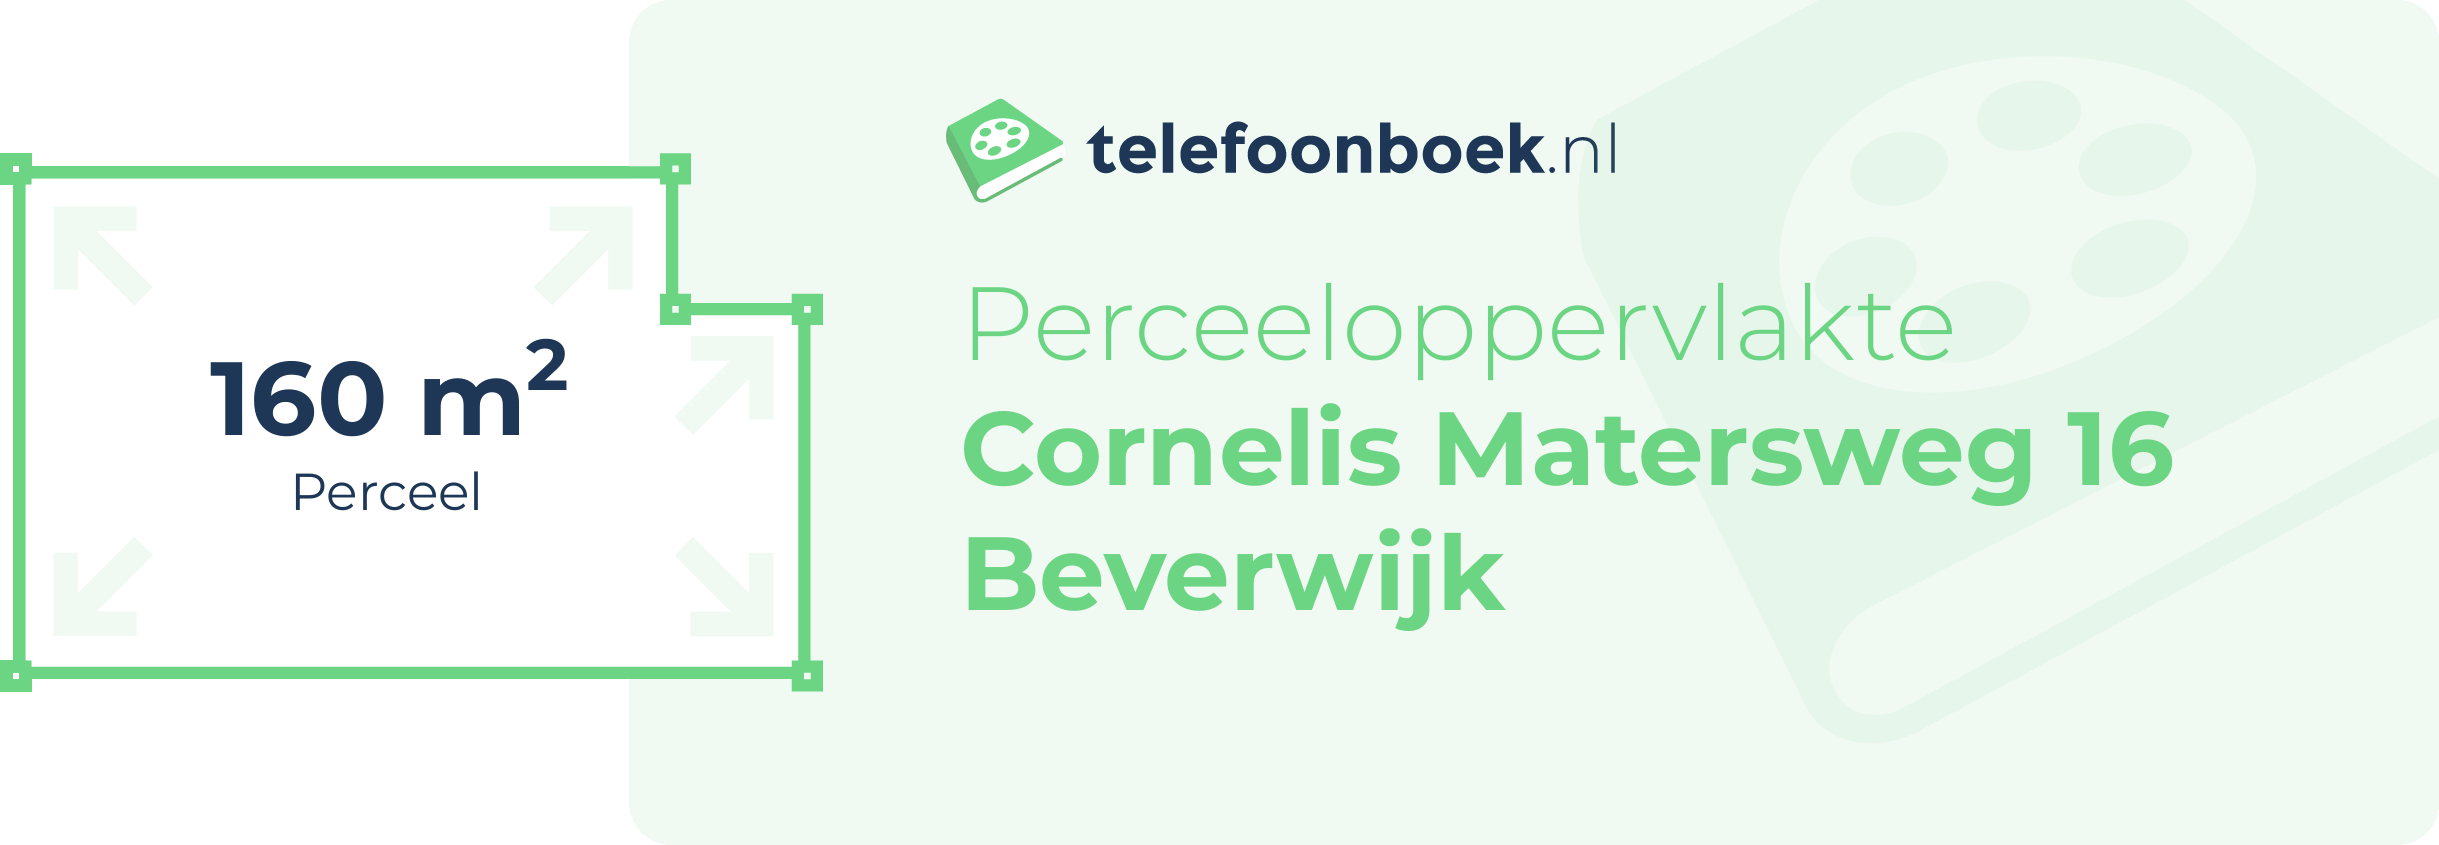 Perceeloppervlakte Cornelis Matersweg 16 Beverwijk